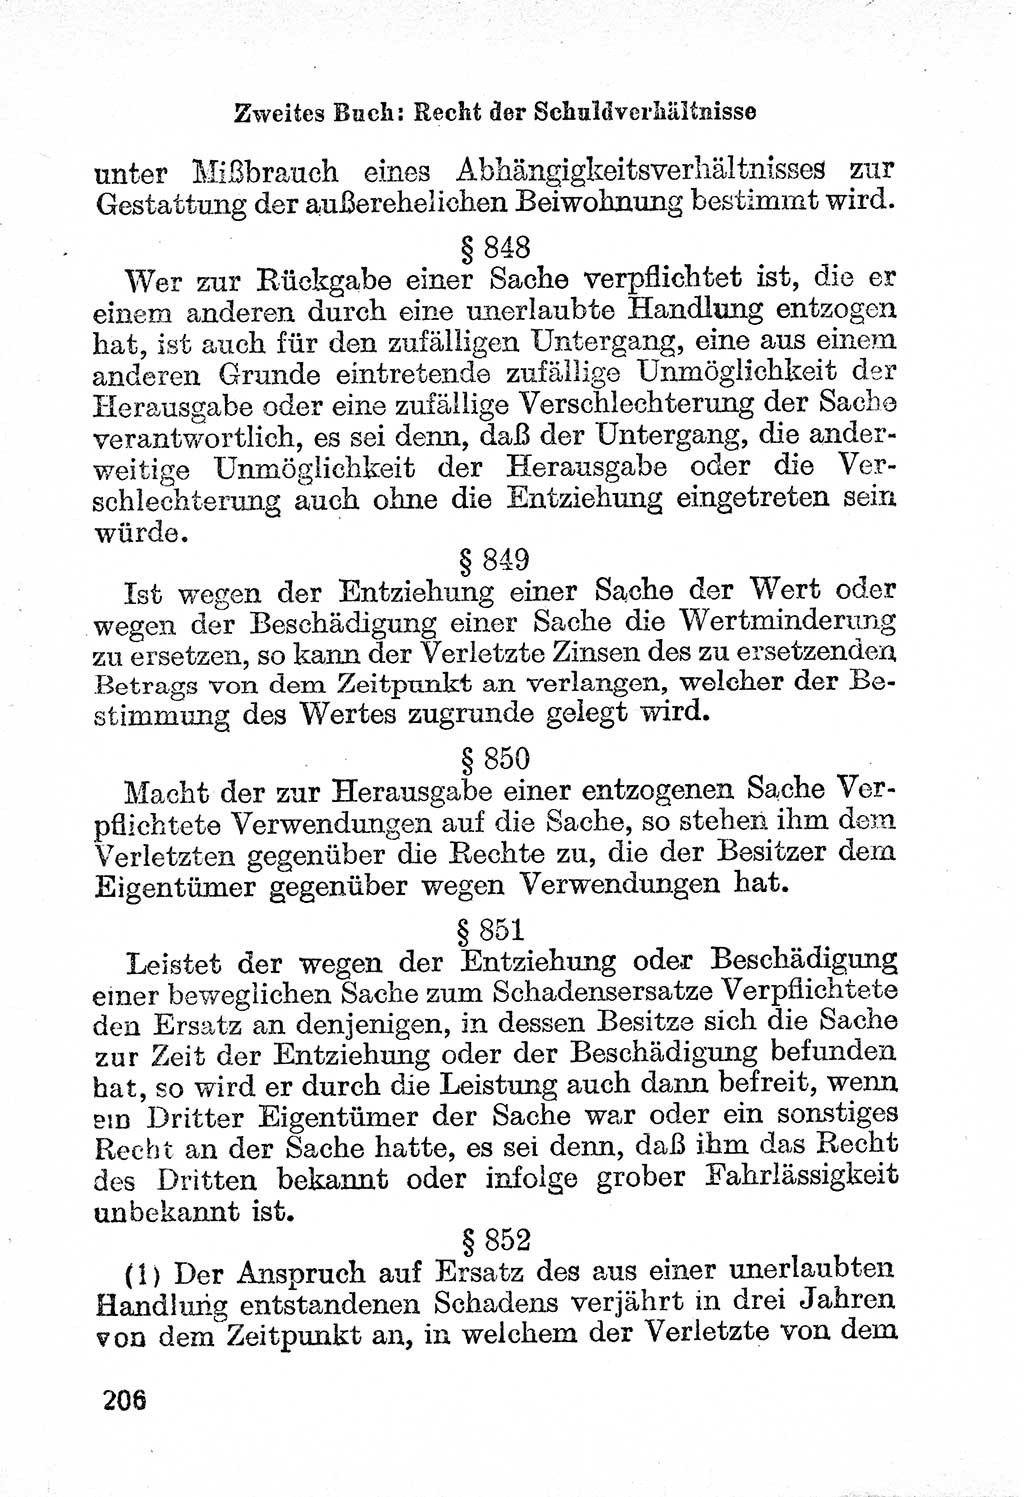 Bürgerliches Gesetzbuch (BGB) nebst wichtigen Nebengesetzen [Deutsche Demokratische Republik (DDR)] 1956, Seite 206 (BGB Nebenges. DDR 1956, S. 206)